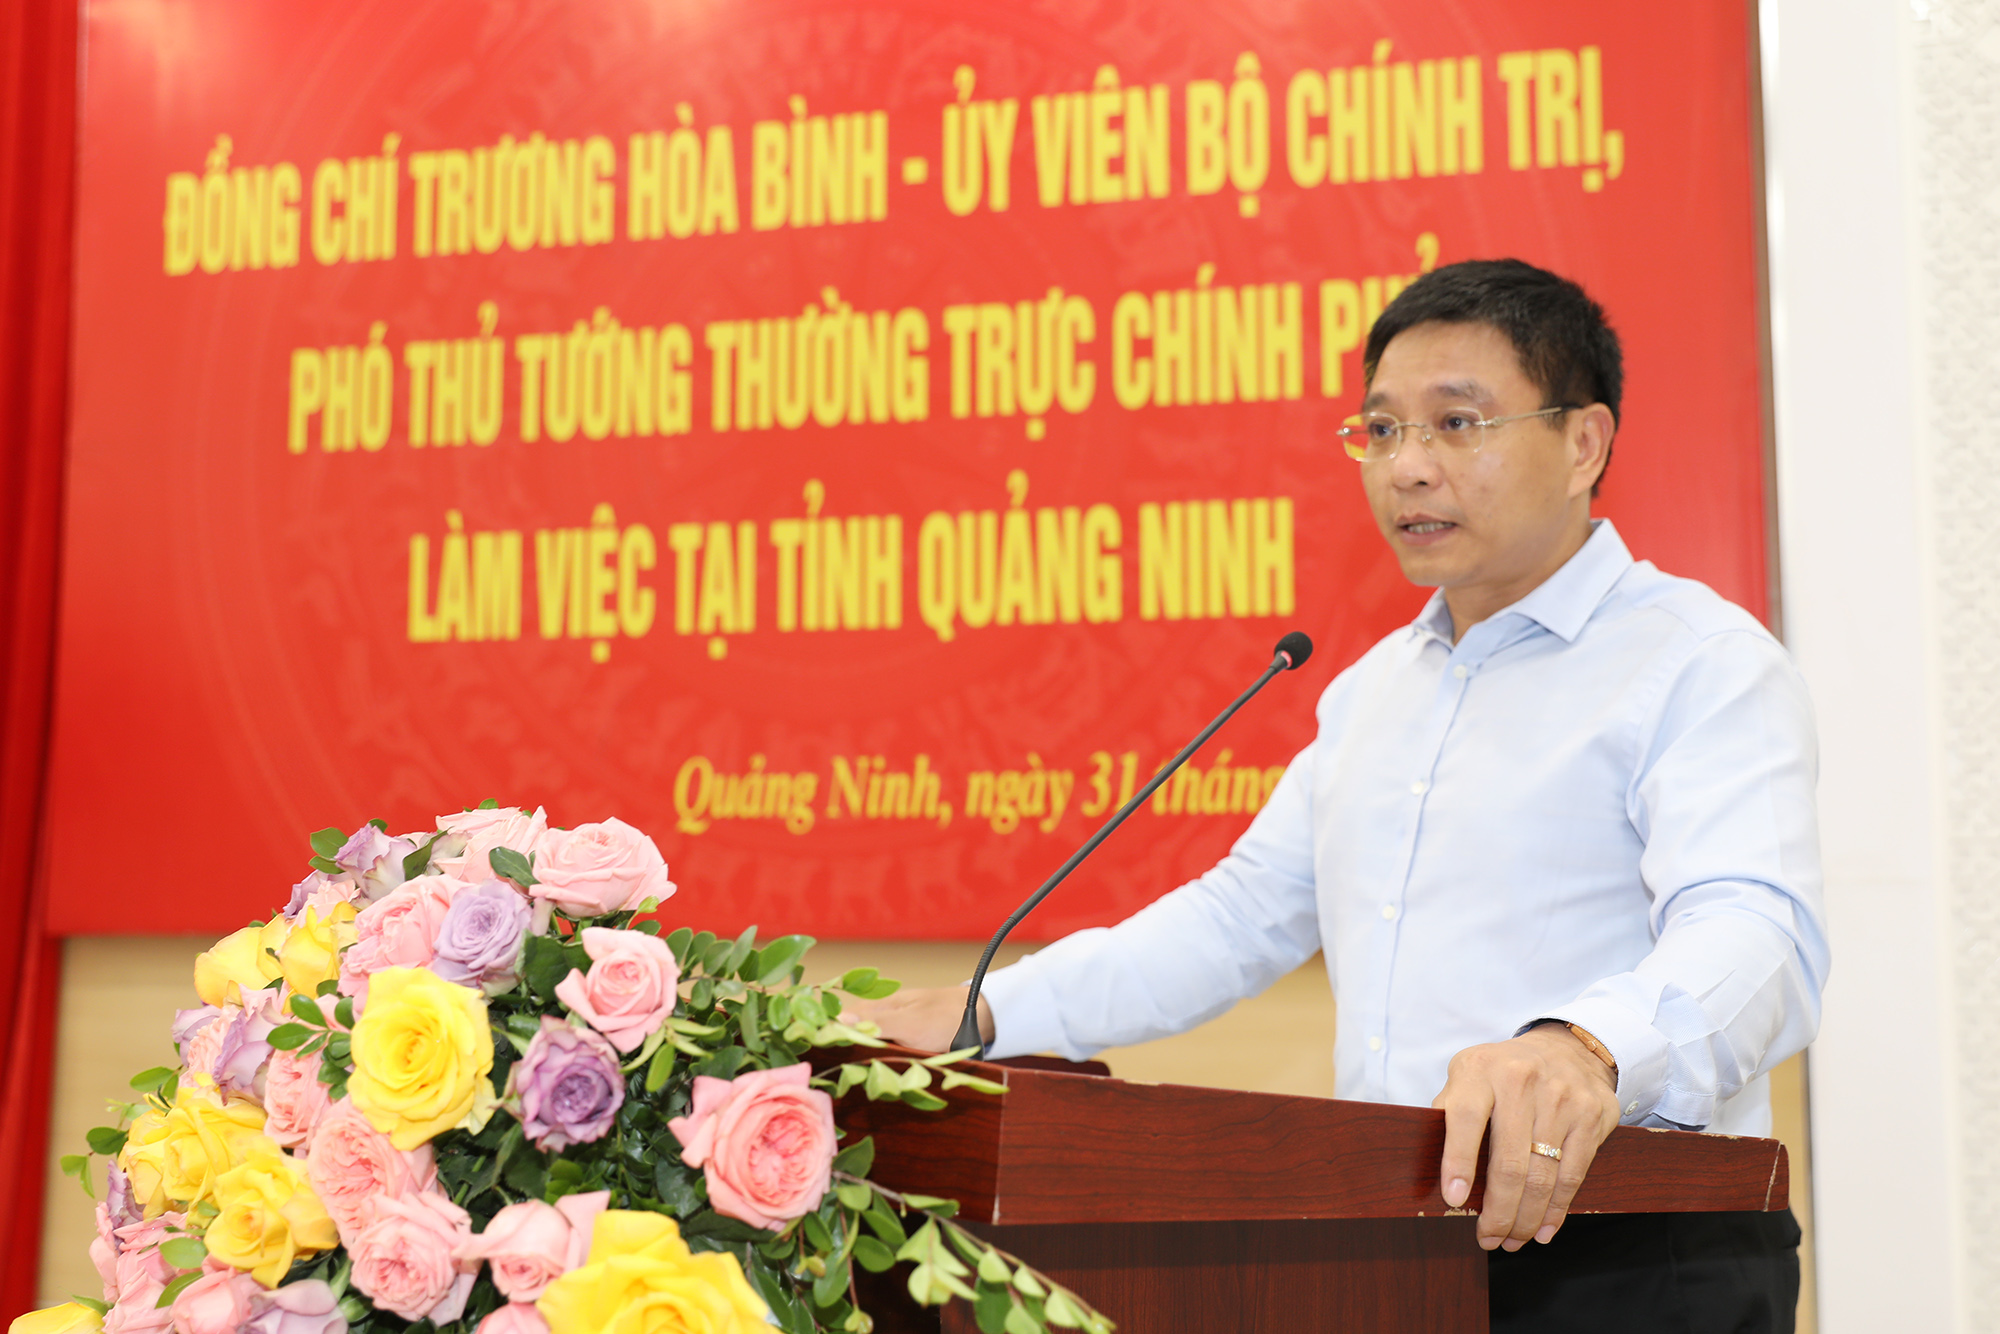 Đồng chí Nguyễn Văn Thắng, Phó Bí thư Tỉnh ủy, Chủ tịch UBND tỉnh chủ trì